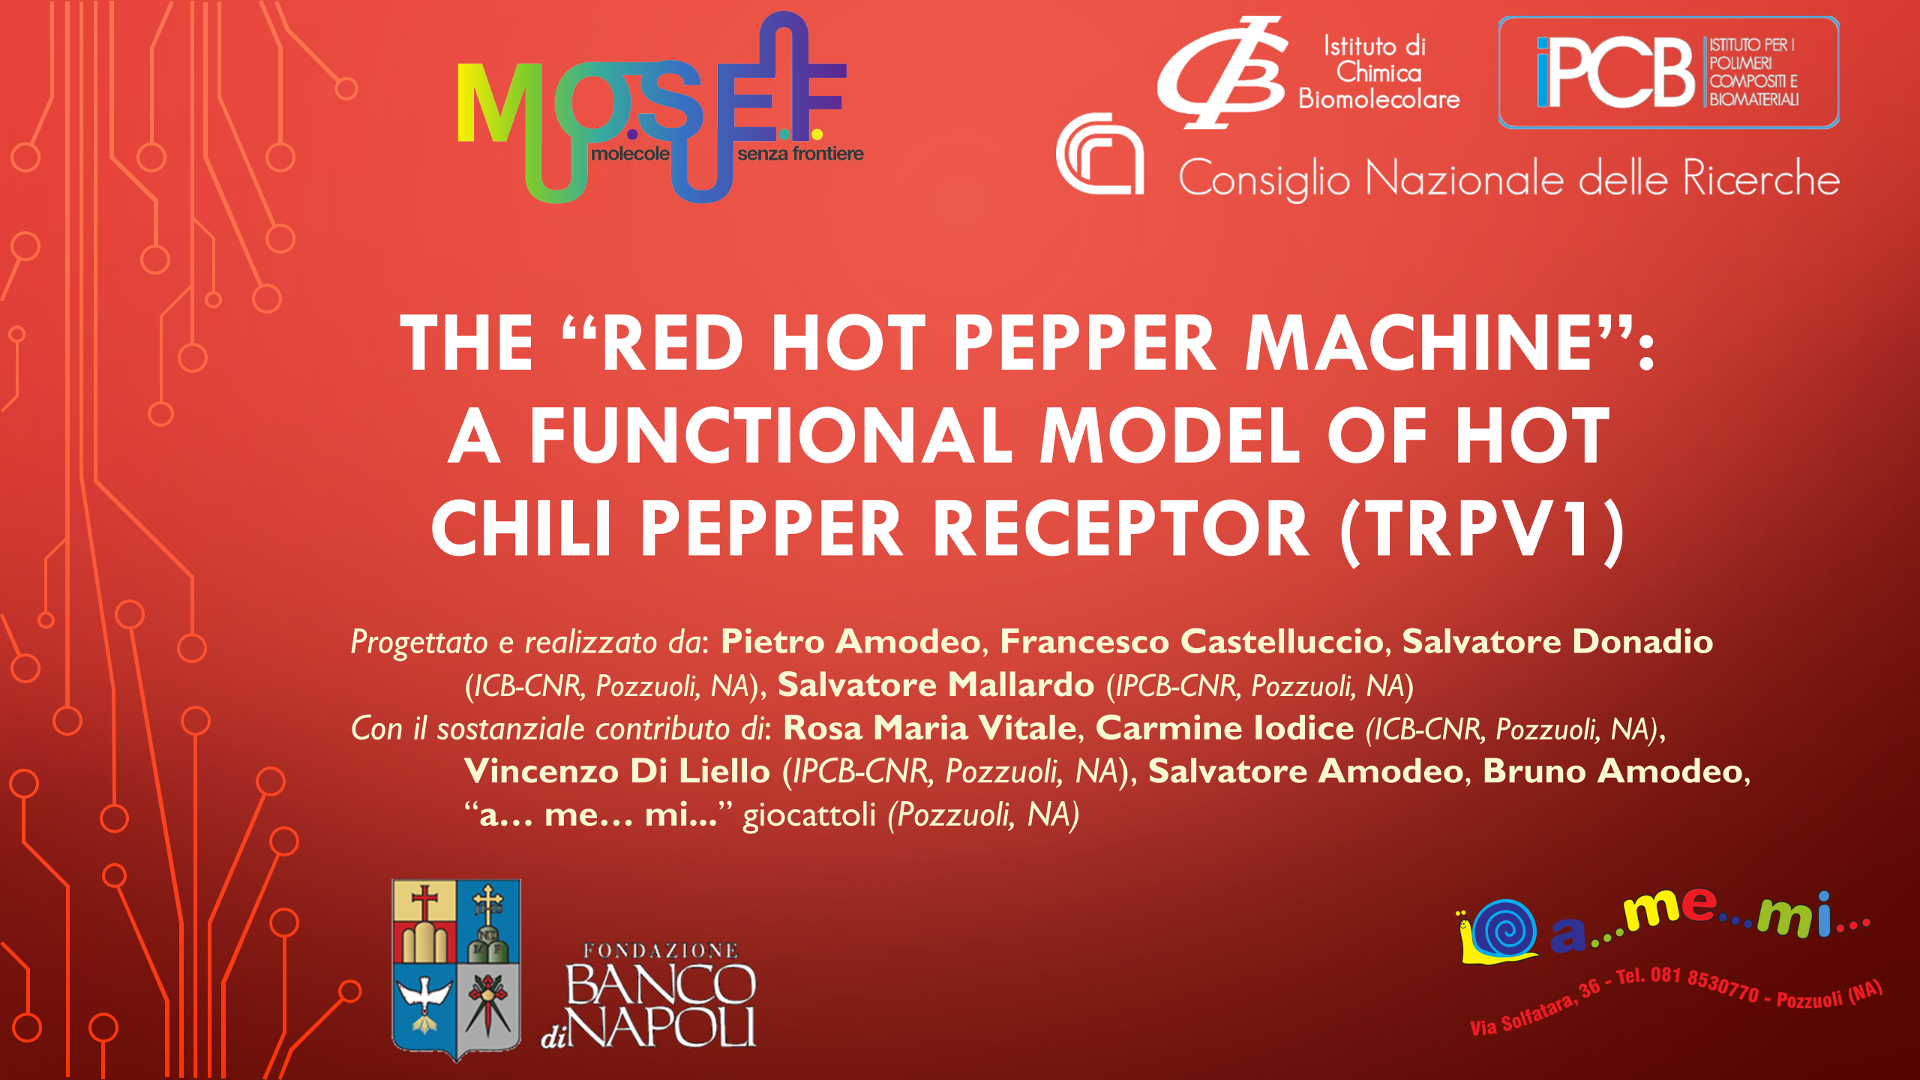 The Red Hot Pepper Machine